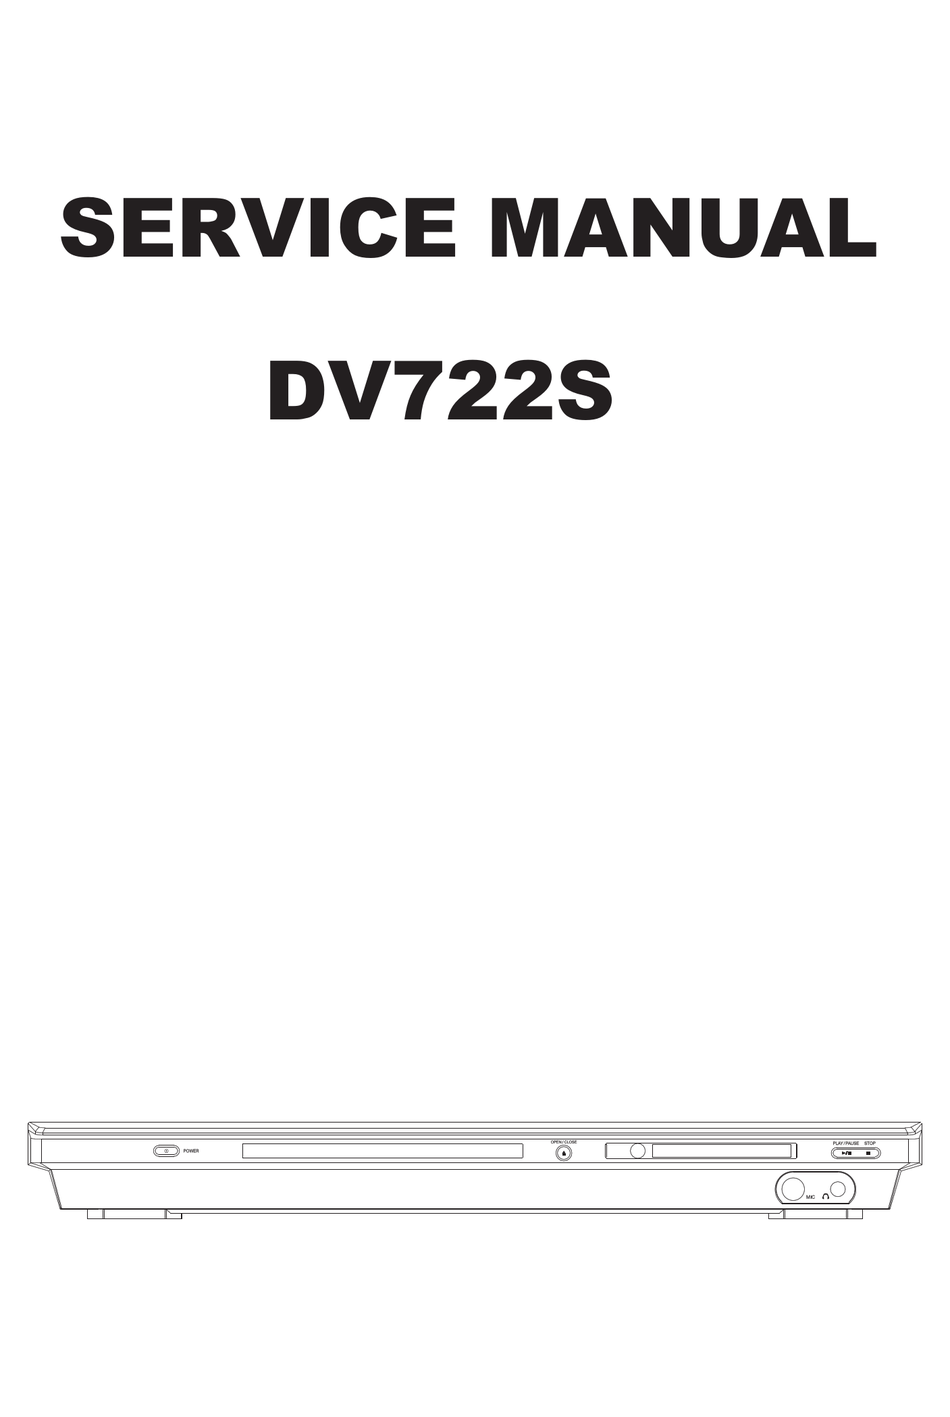 BBK DV722S SERVICE MANUAL Pdf Download | ManualsLib